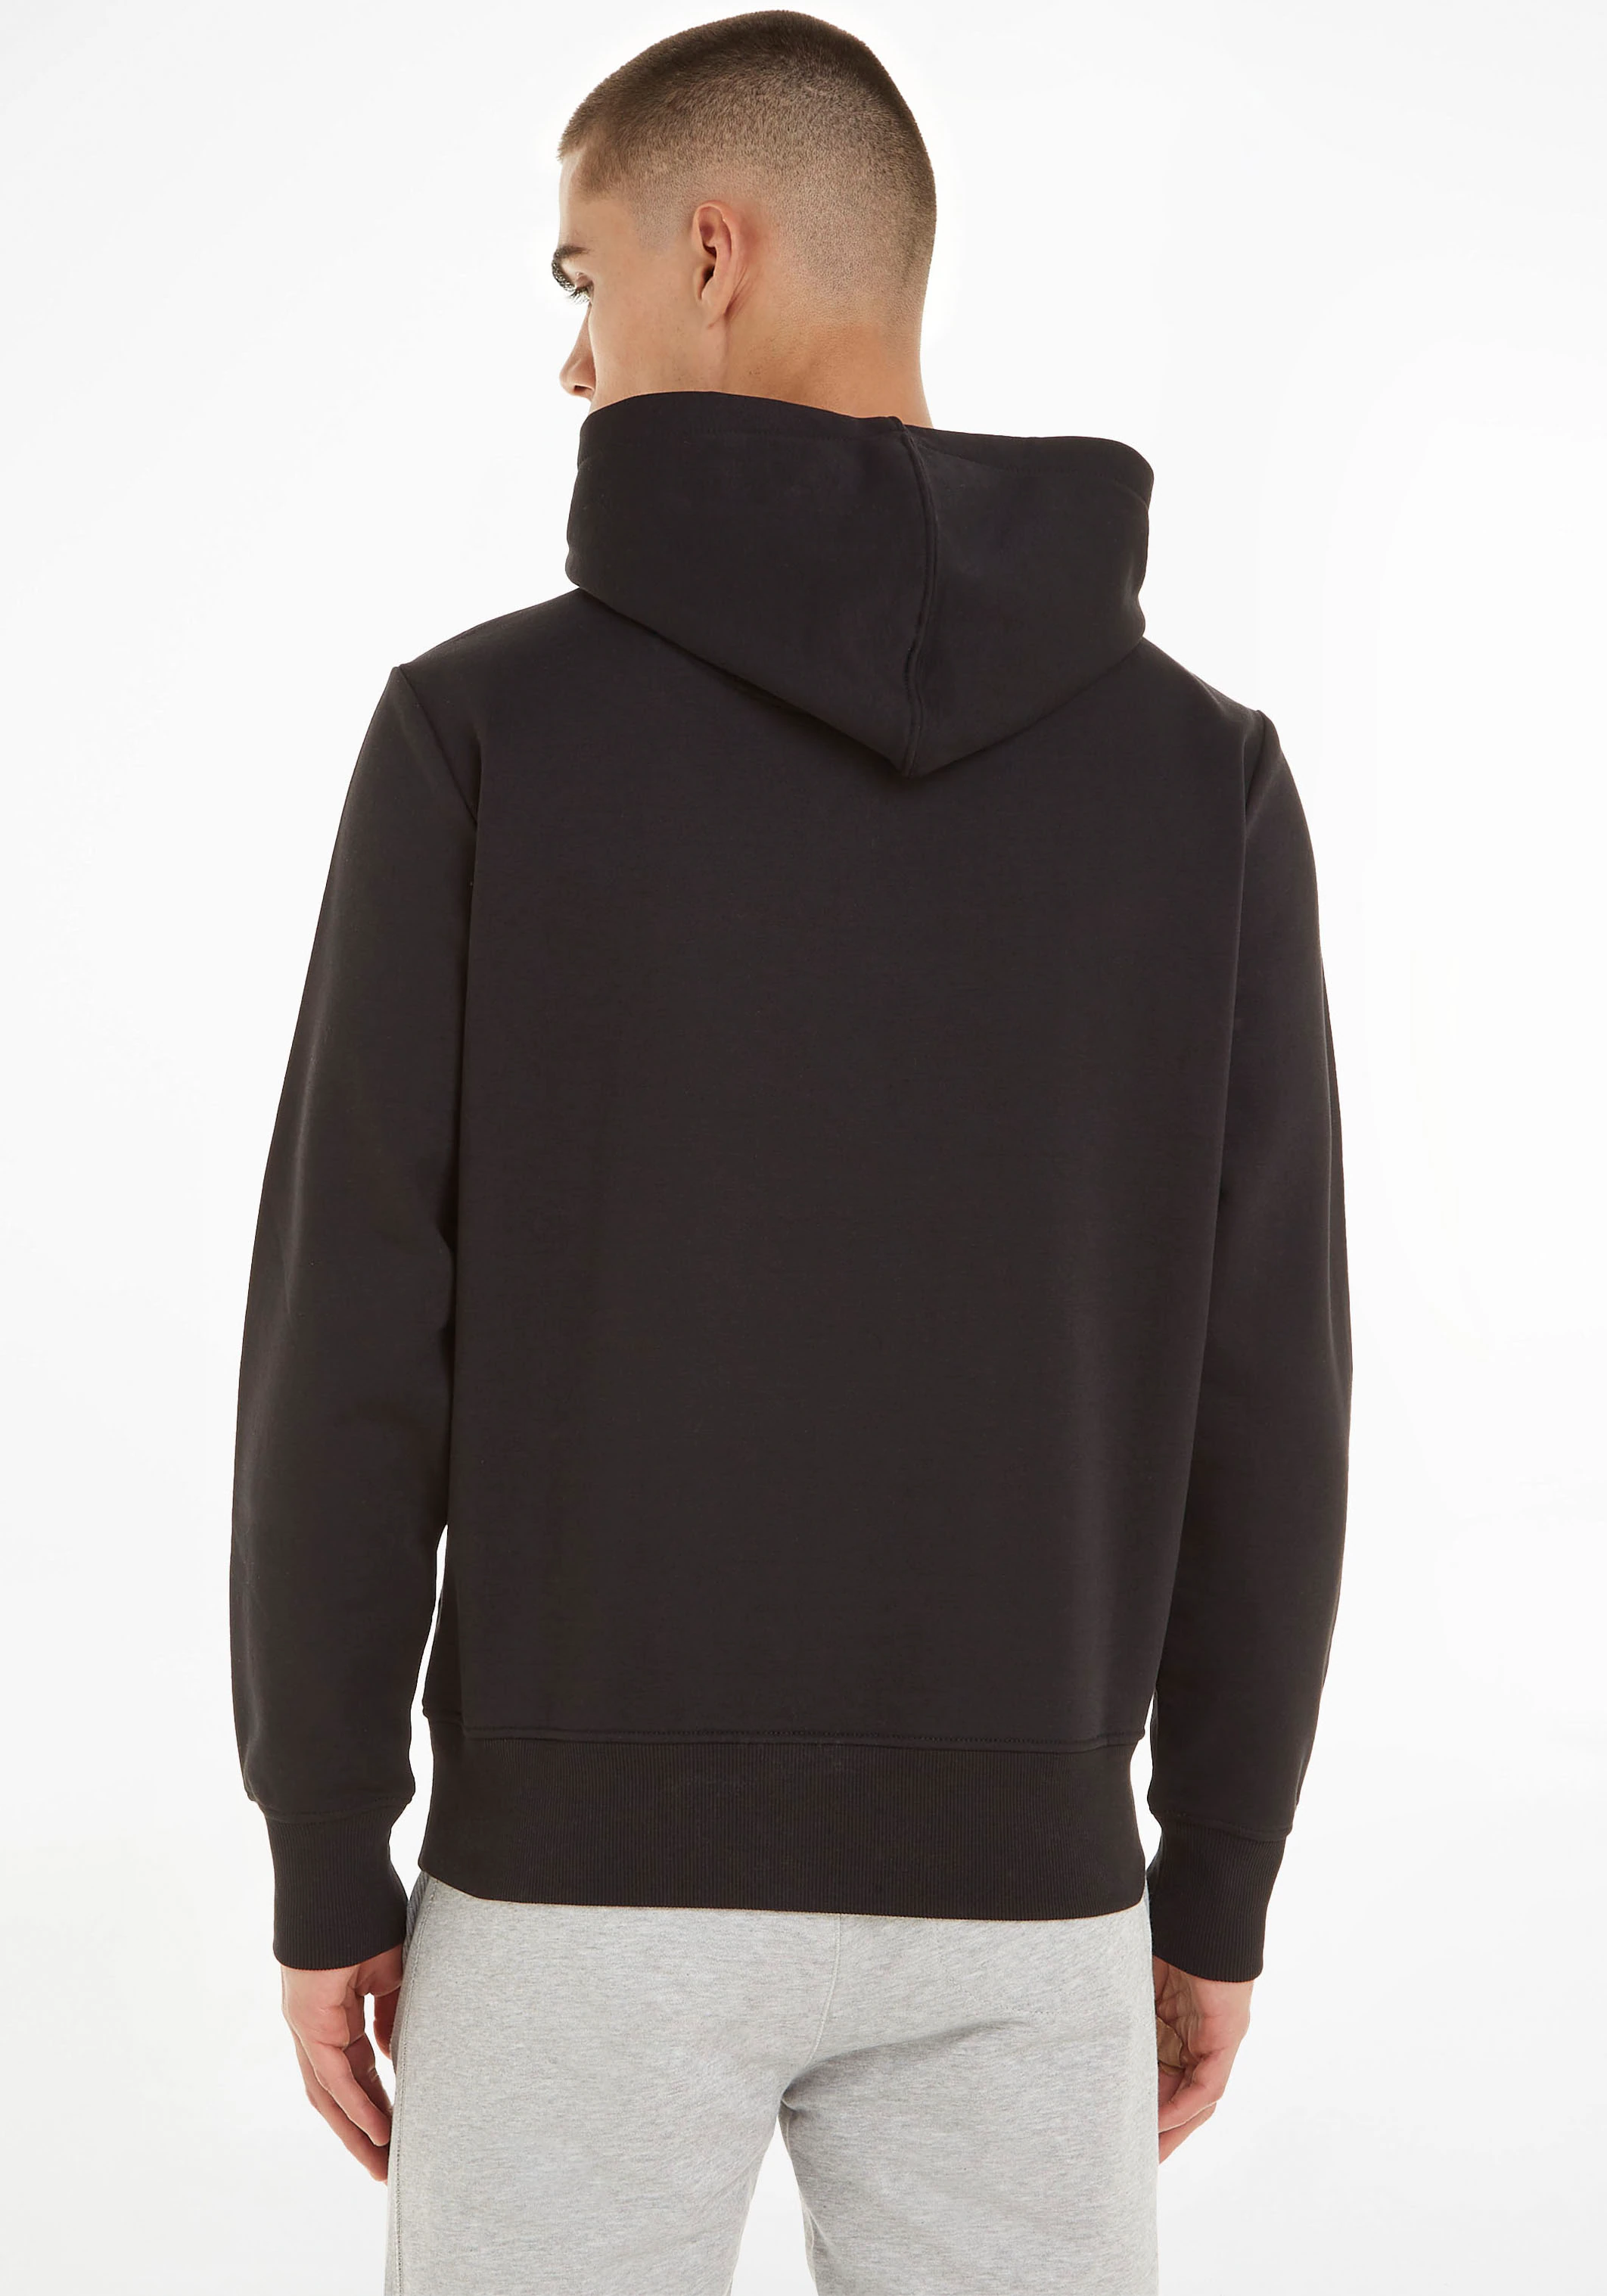 Calvin Klein Jeans Kapuzensweatshirt mit Calvin Klein Logodruck günstig online kaufen